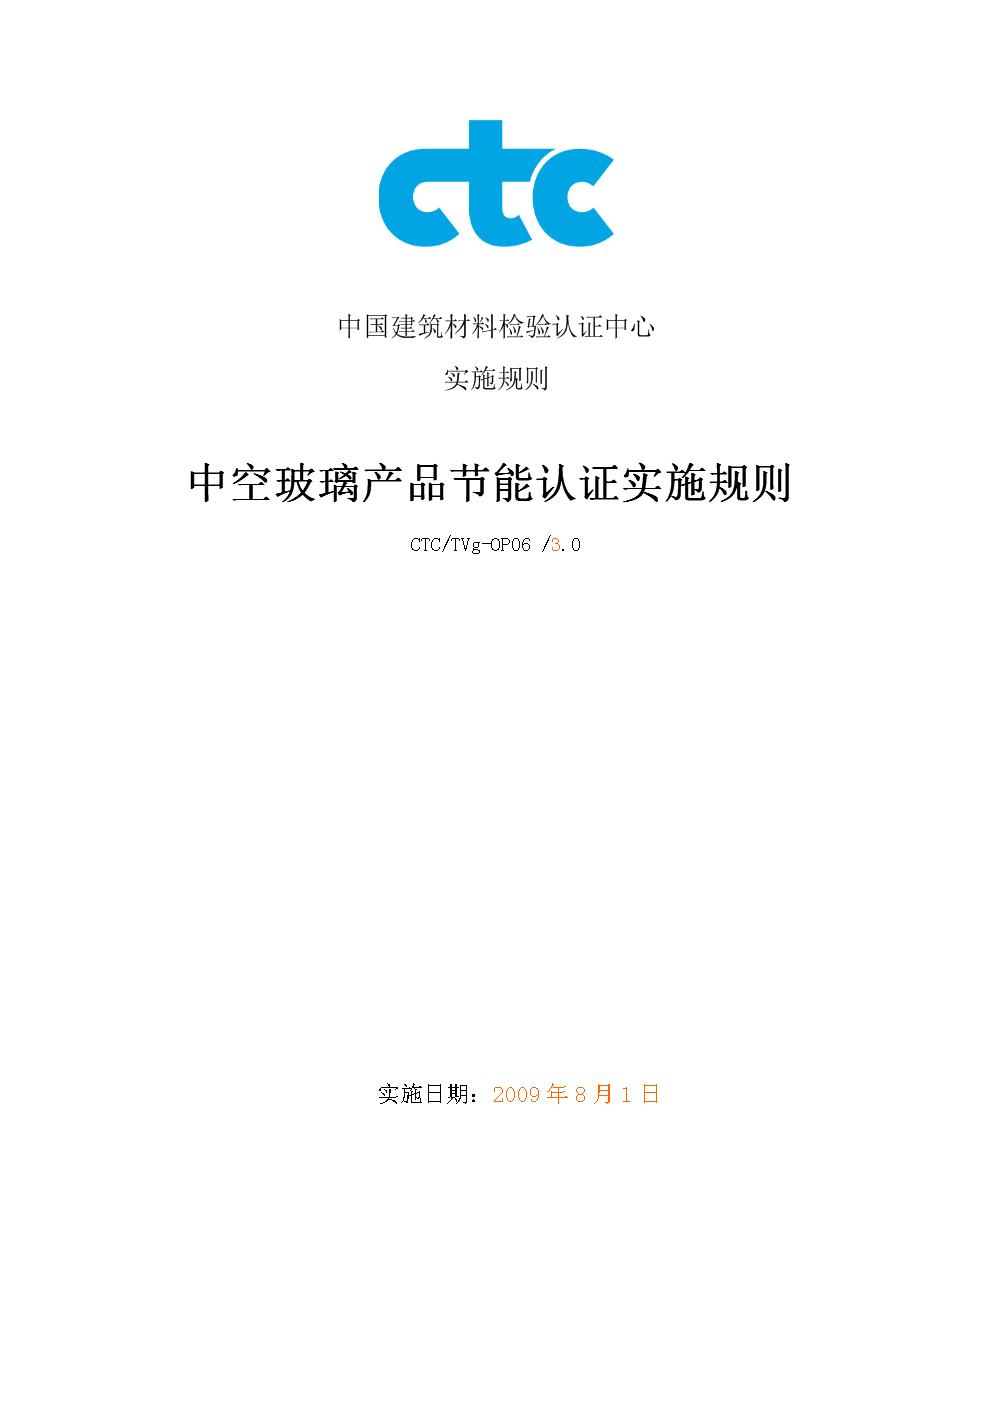 中国畜牧业协会工程分会_中国工程标准化协会_中国工程勘察设计协会